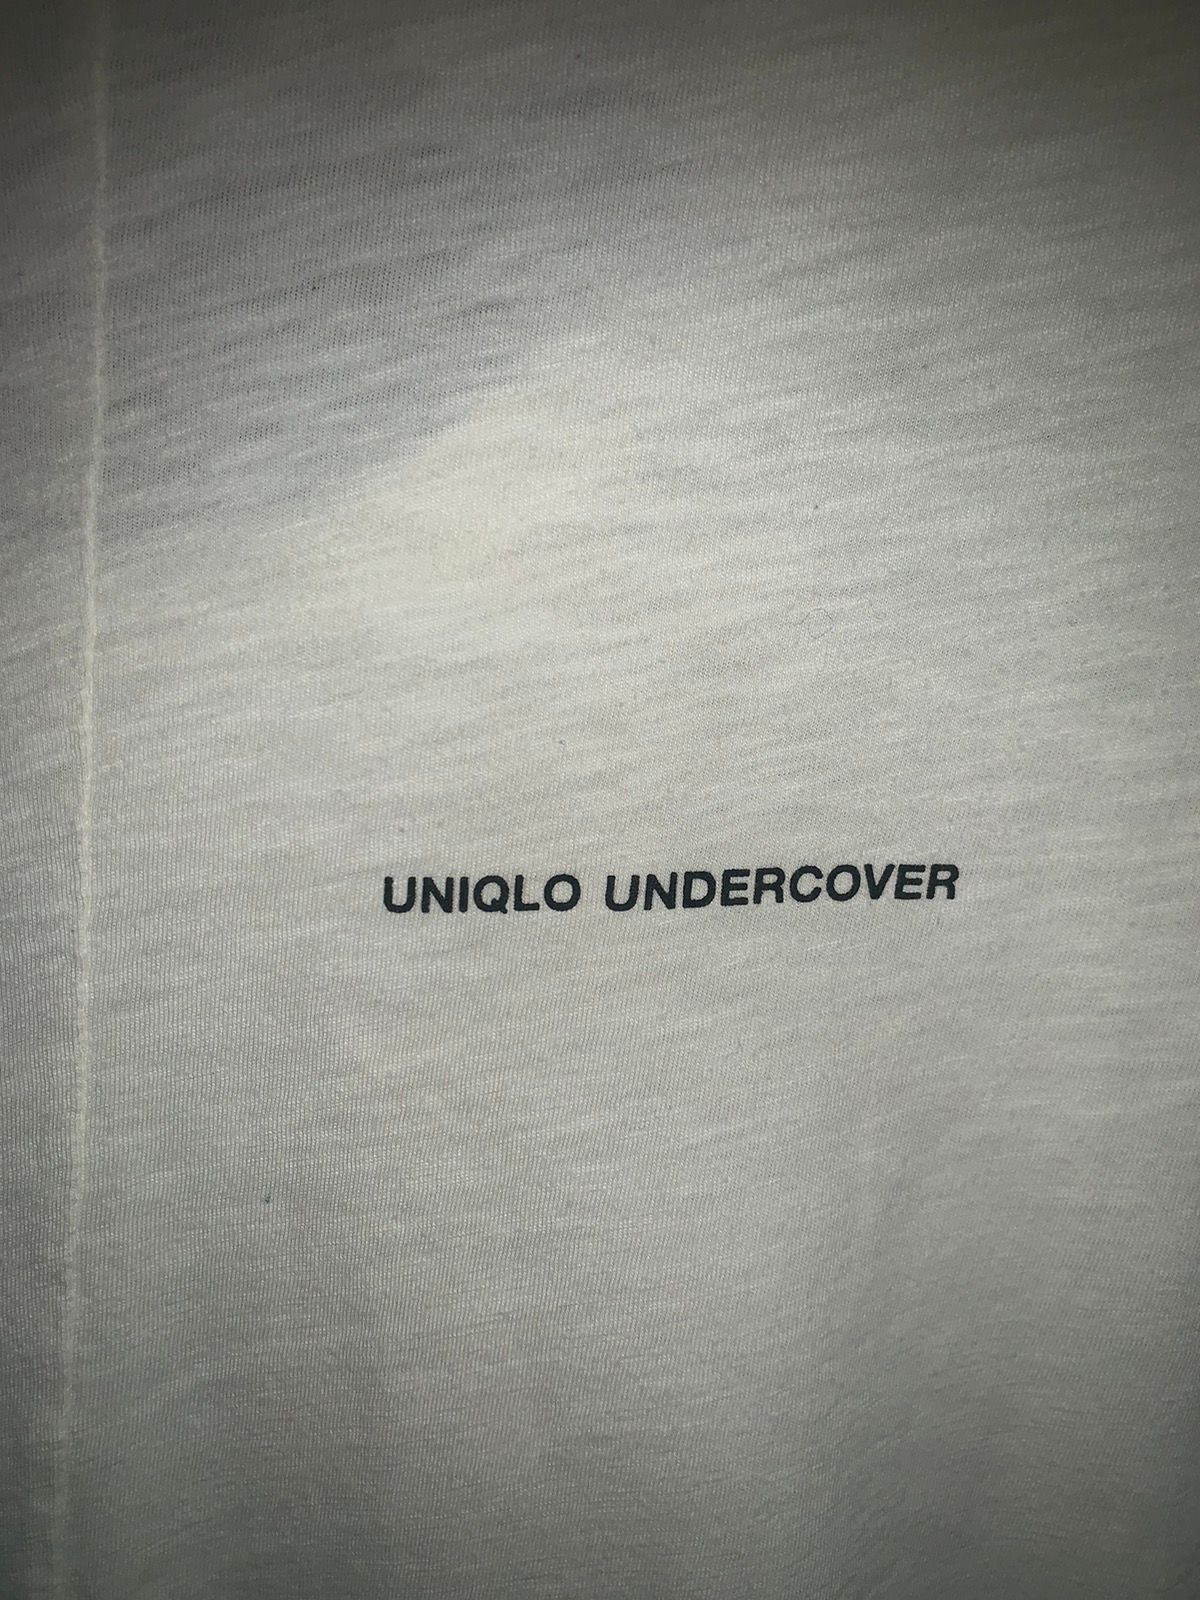 Uniqlo Undercover X Disney Mickey Mouse - 5